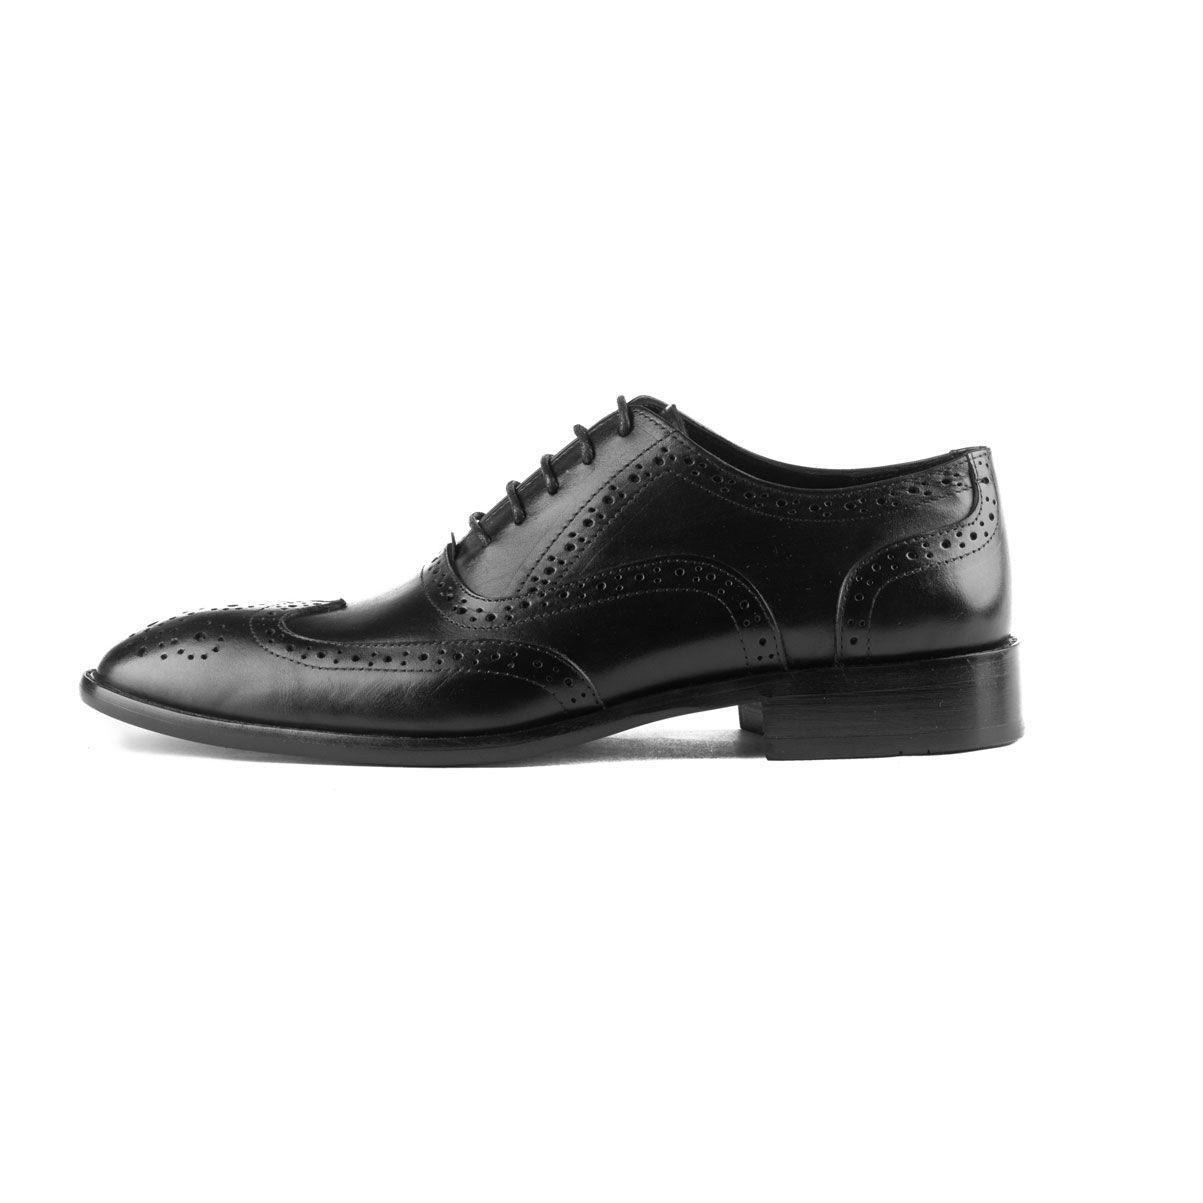 Vatrina Genuine Leather Brogue Shoes - Black - Vatrina